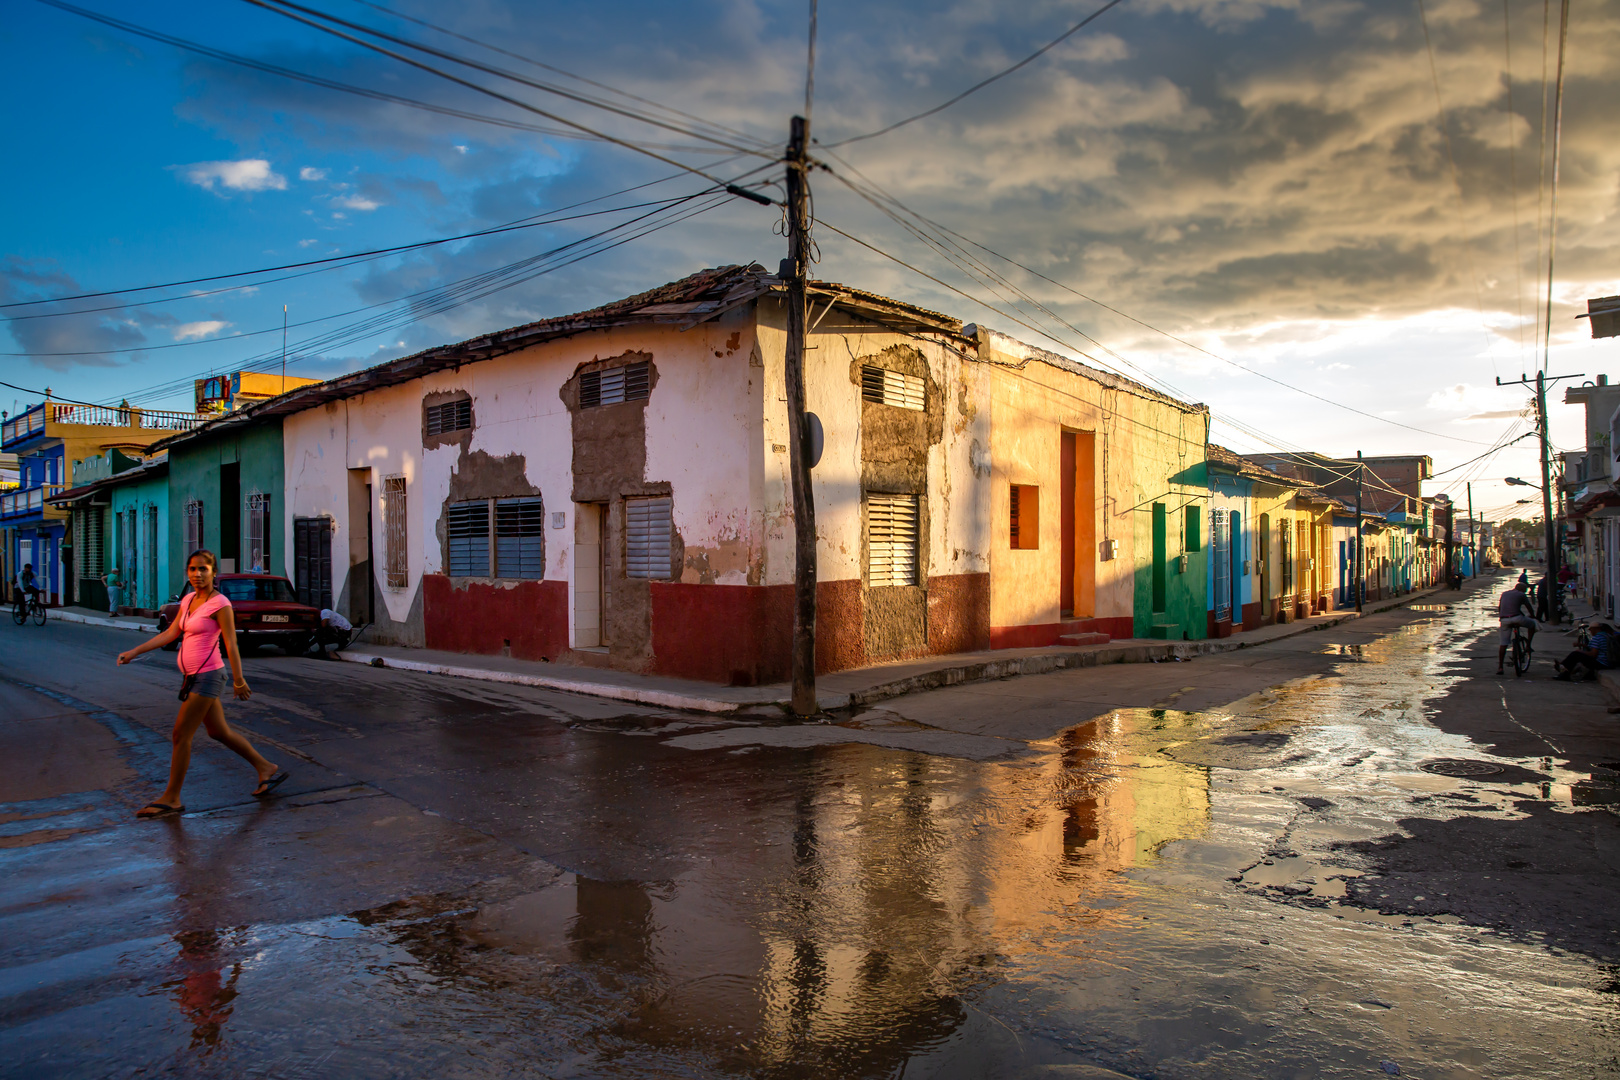 Trinidad after rain